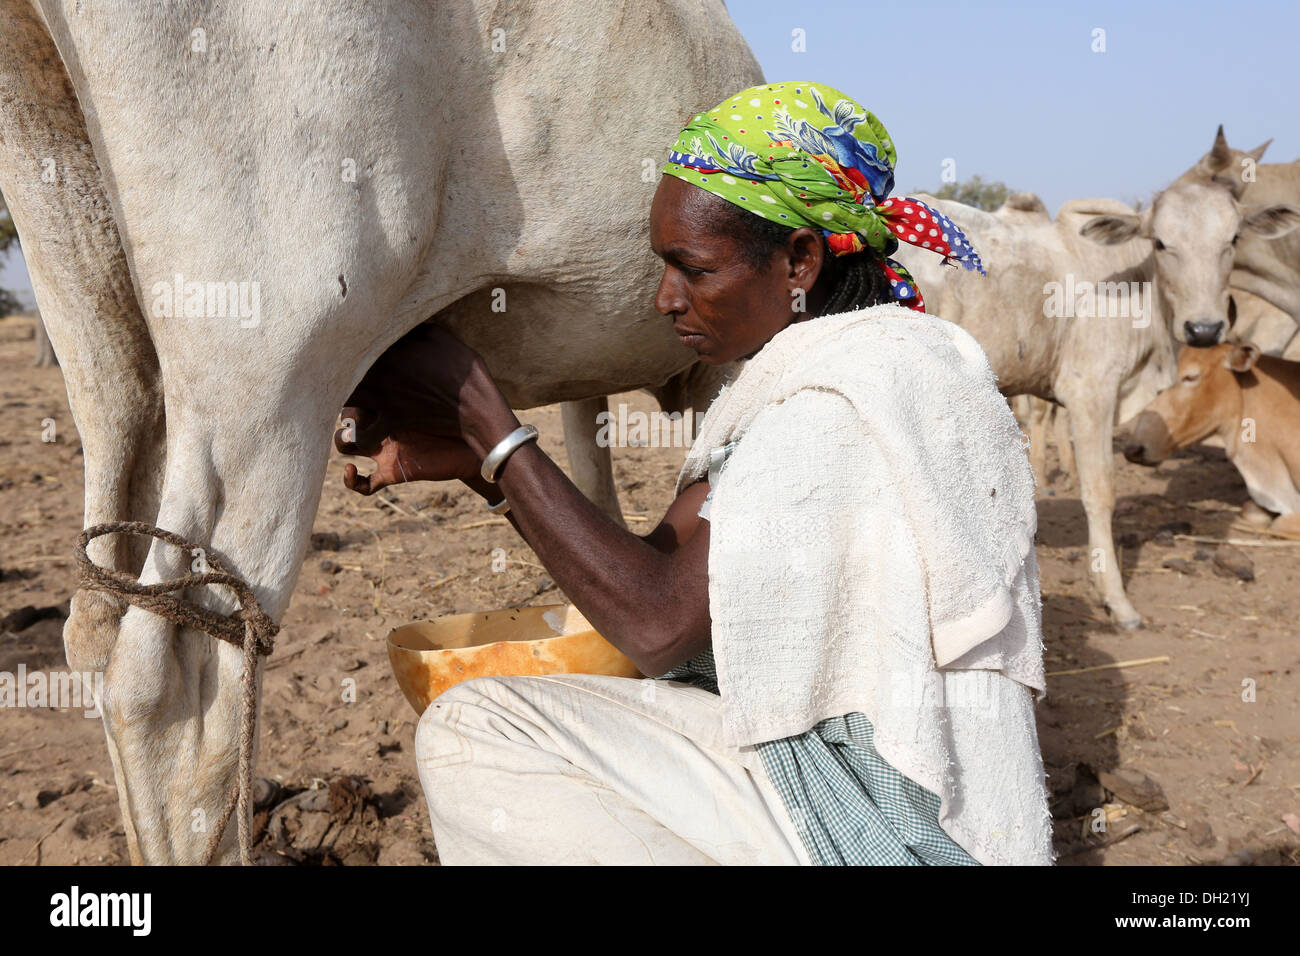 Woman in northern Burkina Faso milking cow Stock Photo